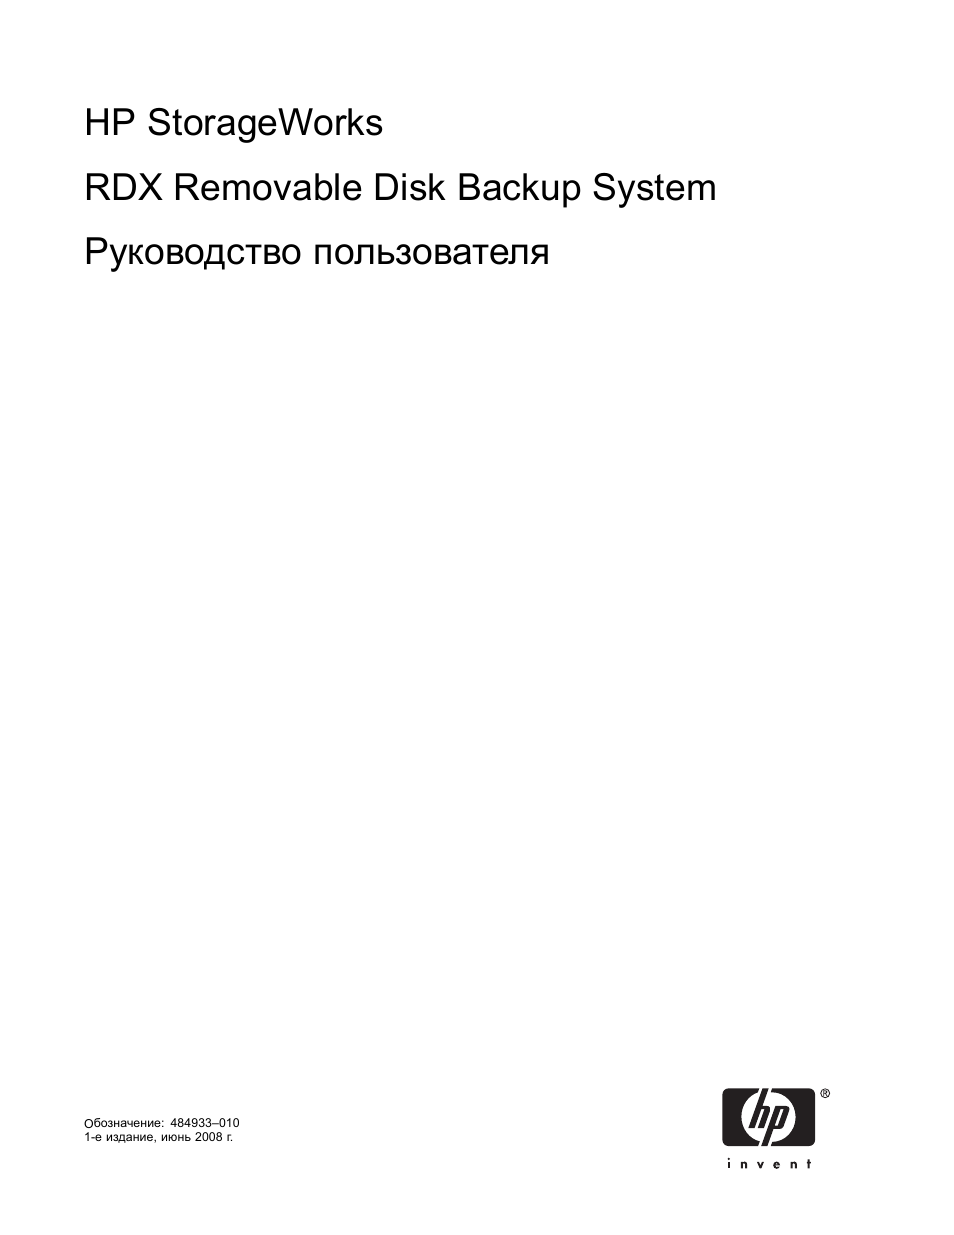 Инструкция по эксплуатации HP Система резервного копирования HP RDX на съемный диск | 40 страниц